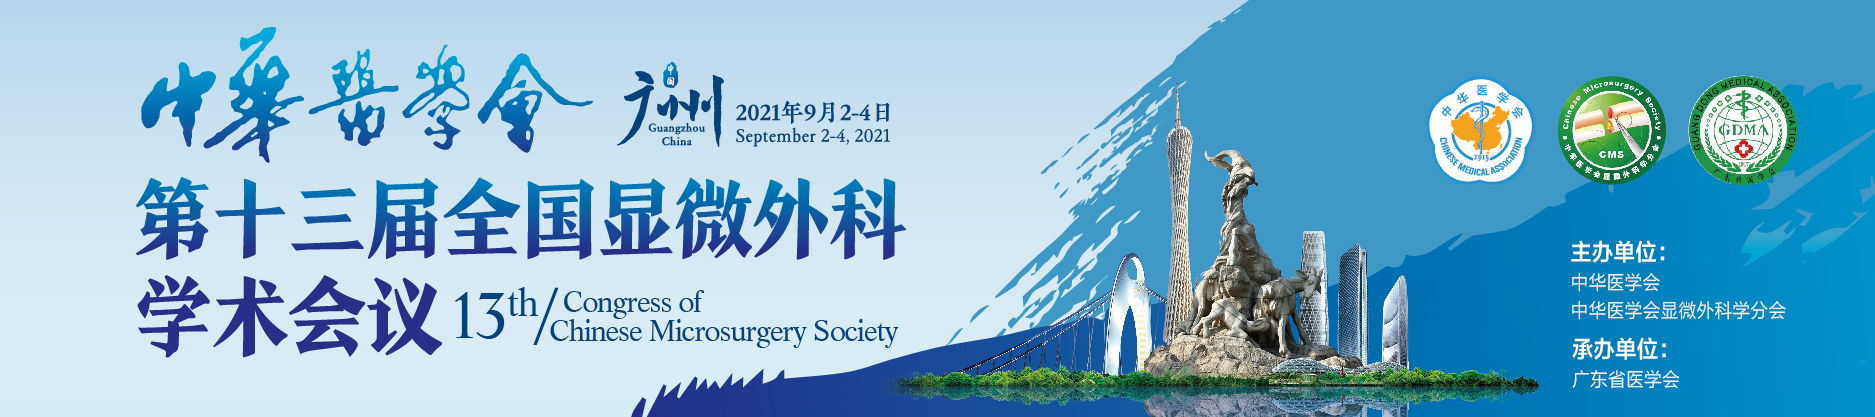 中华医学会第十三届全国显微外科学术会议